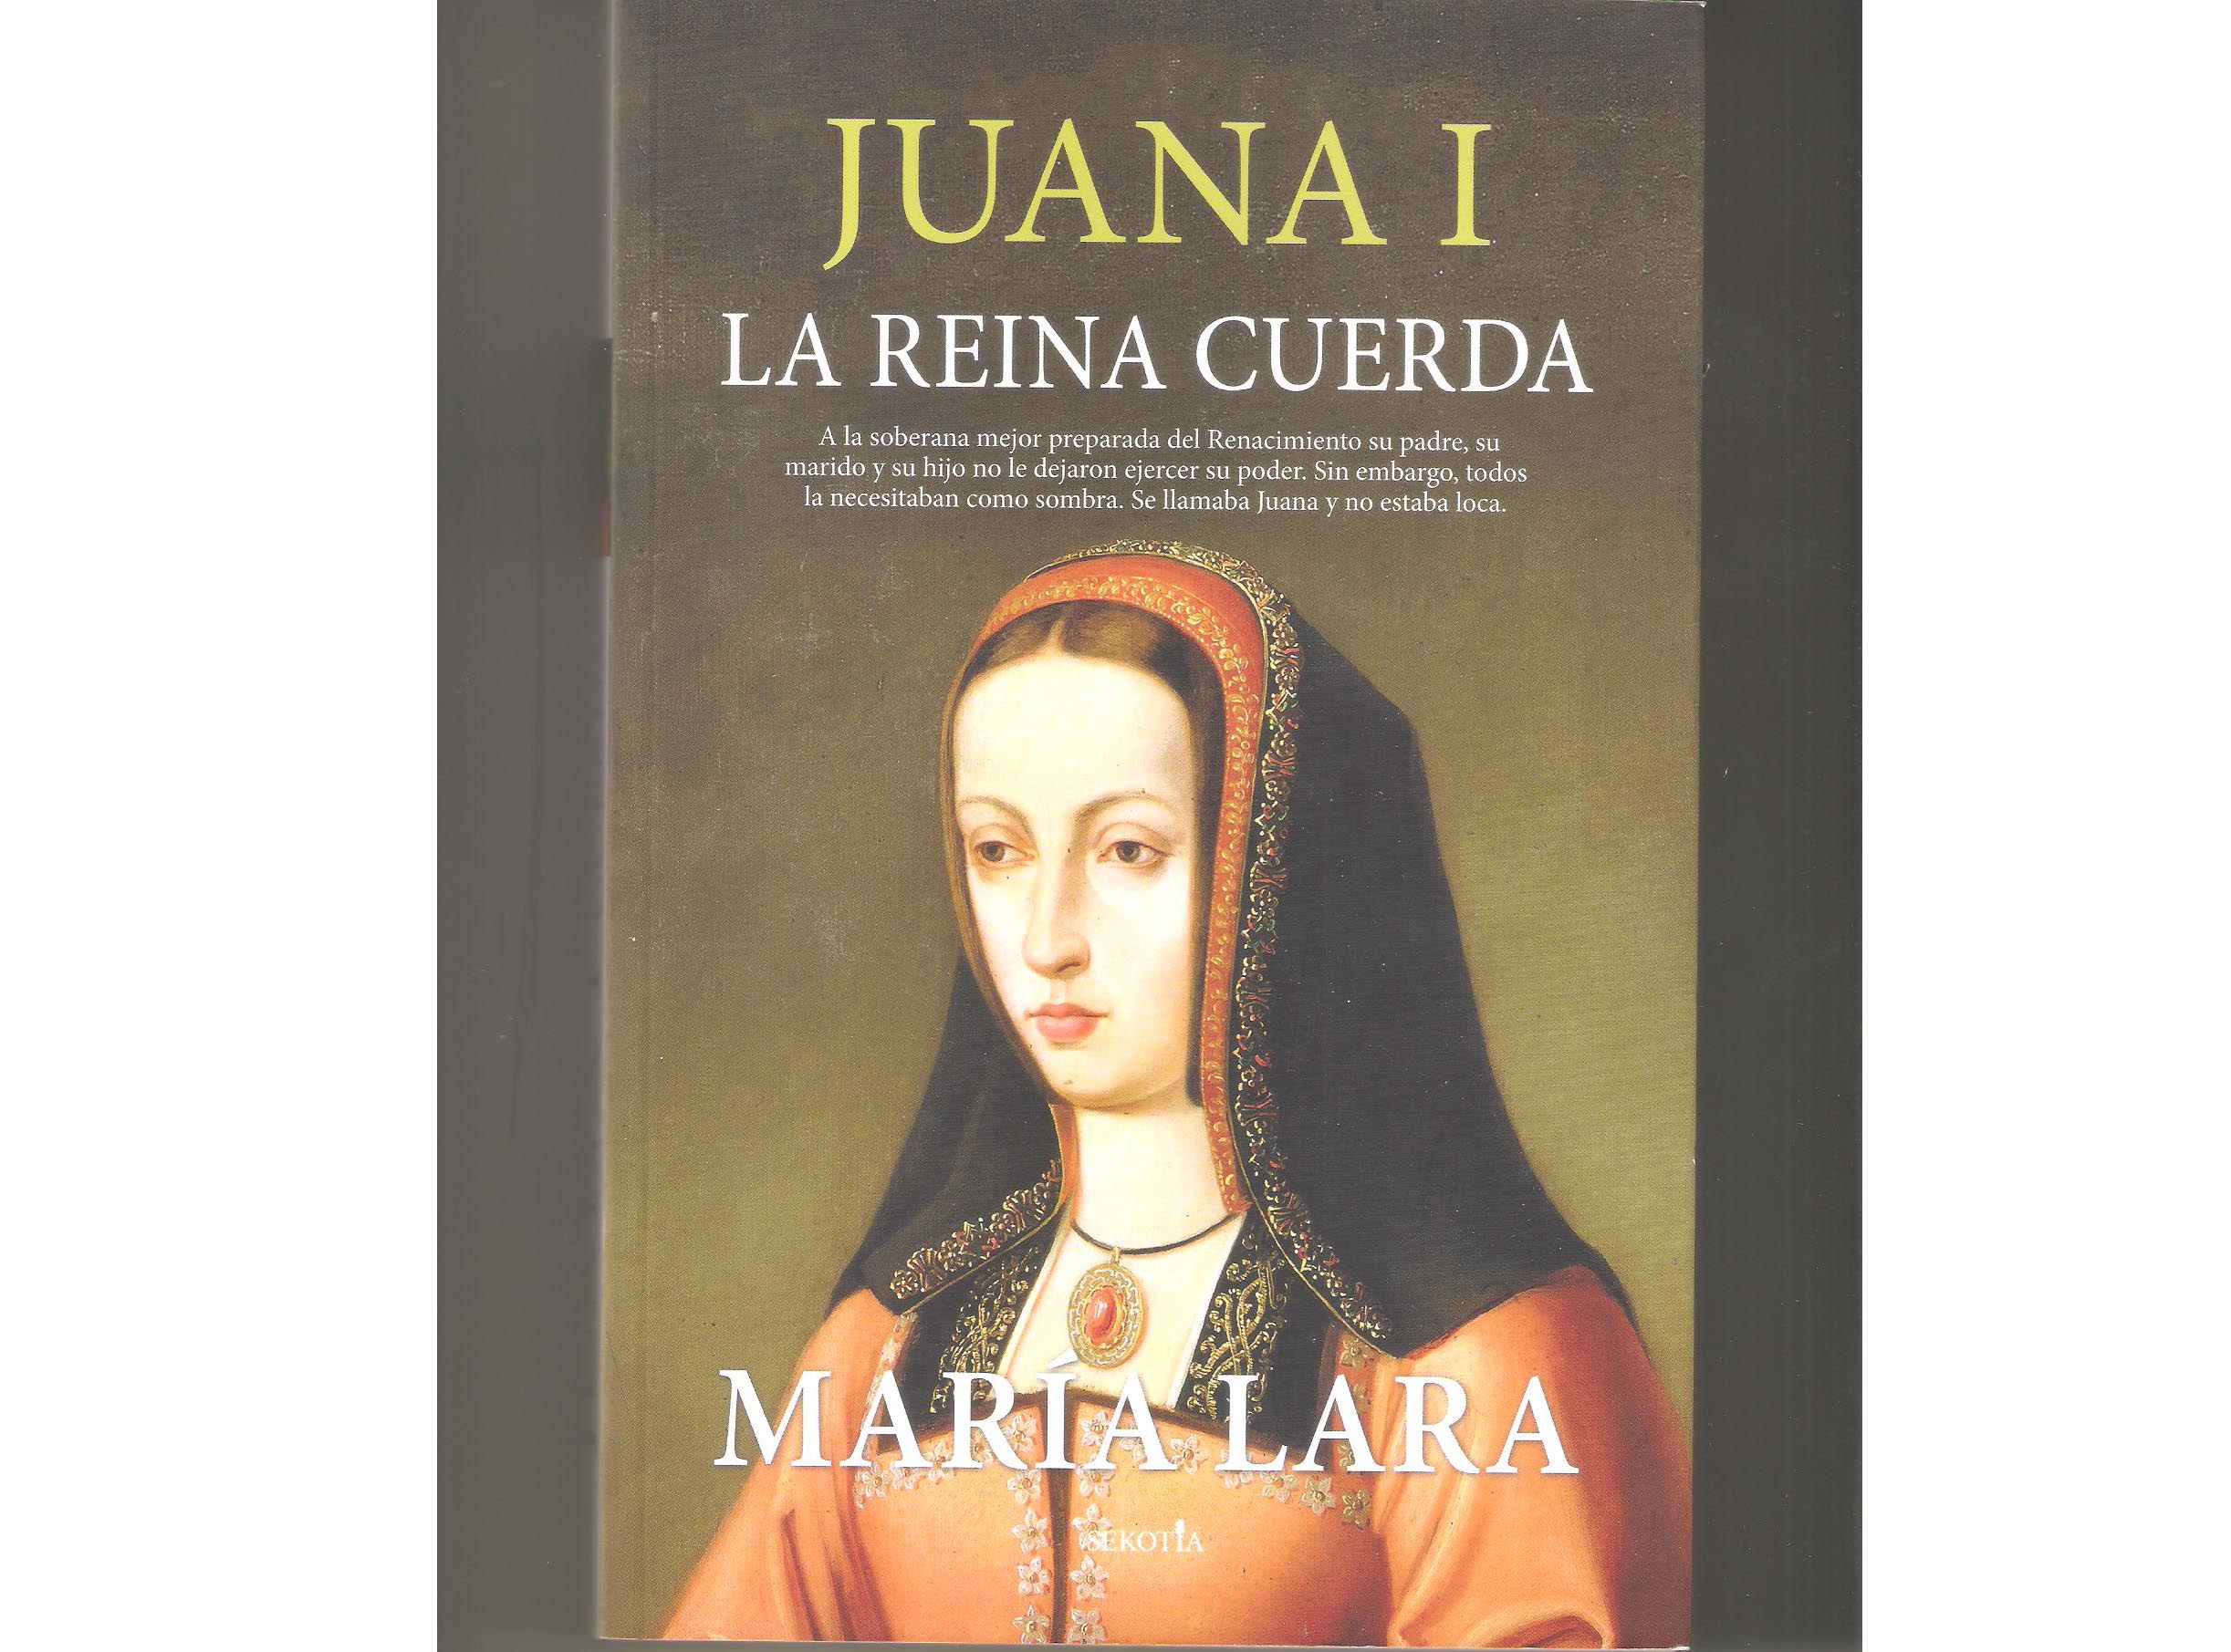 Portada del libro "Juana I, la reina cuerda"